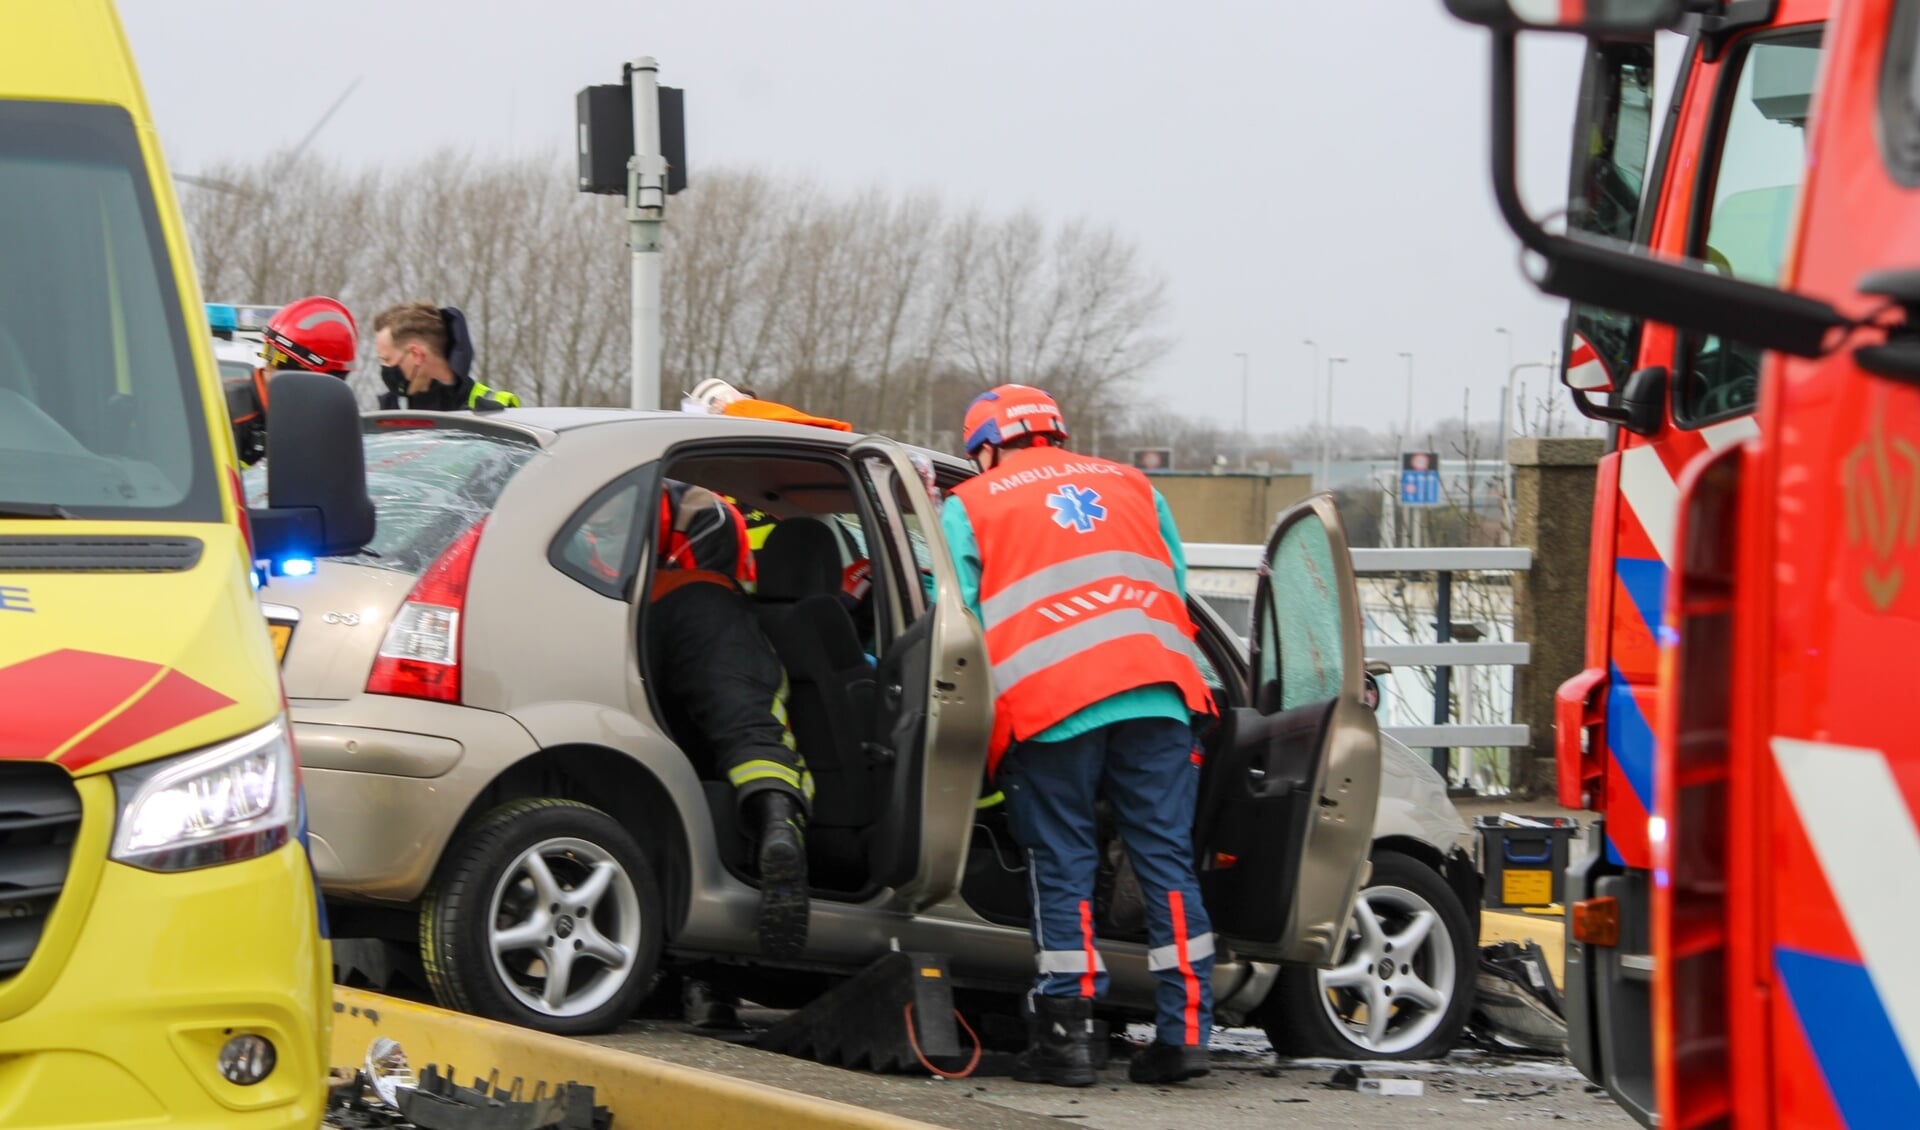 De brandweer kwam eraan te pas om de automobilist die het fietspad was opgeschoten, te bevrijden. (Foto: 112hm.nl)